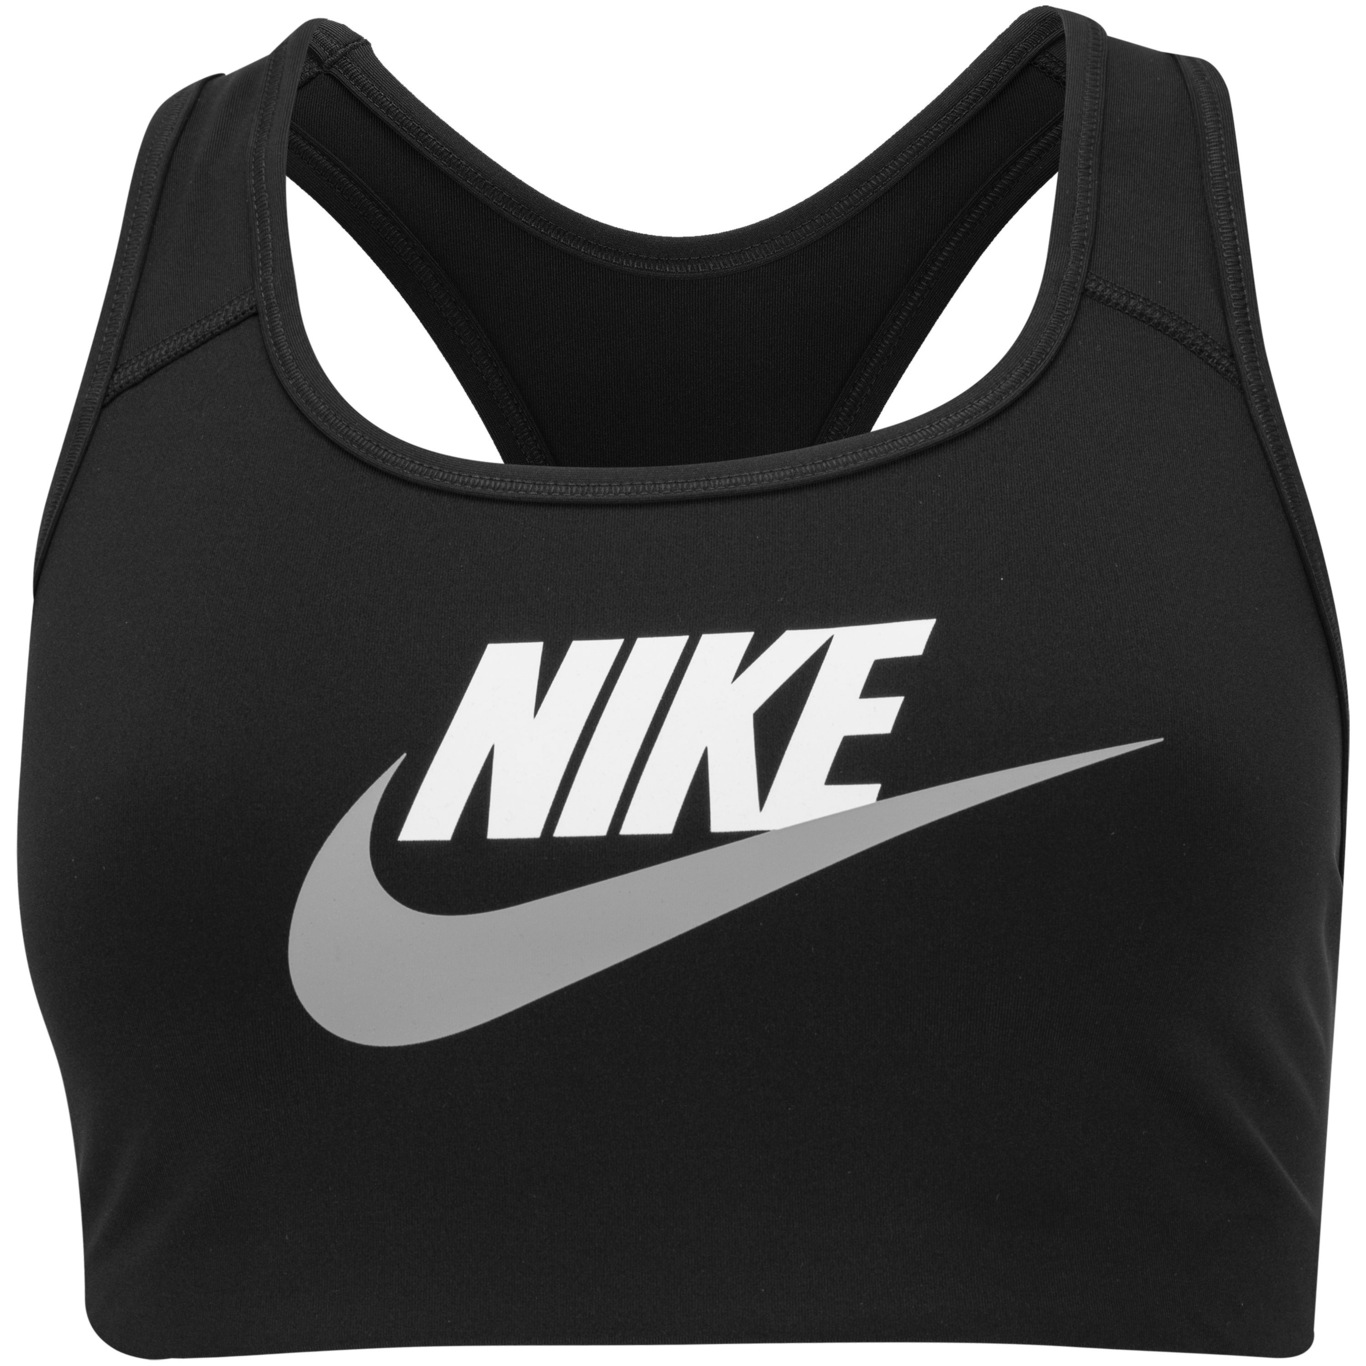 Nike Core Dri-FIT Swoosh Bra